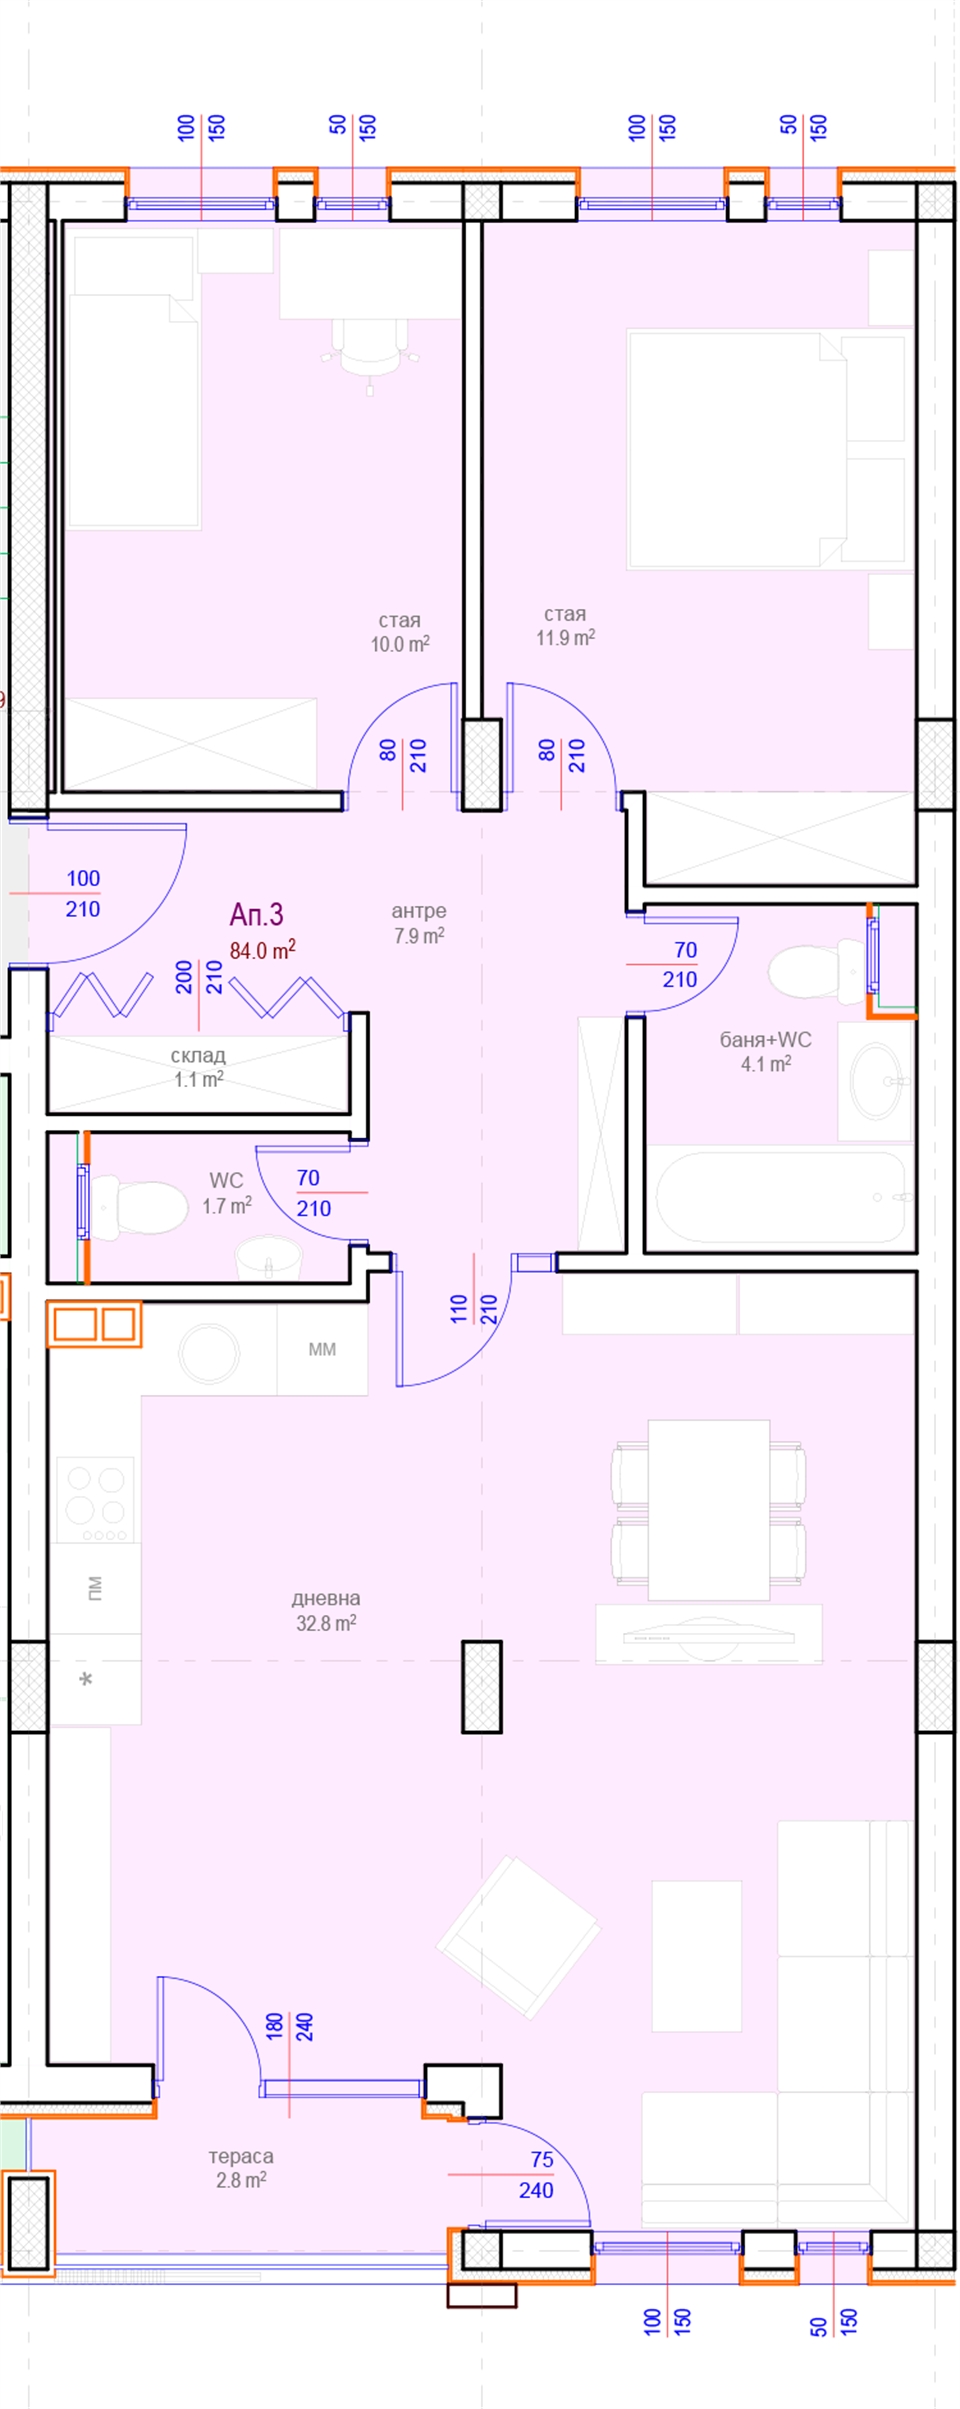 Апартамент № 3, Вход А, 1 етаж, Изложение С-Ю